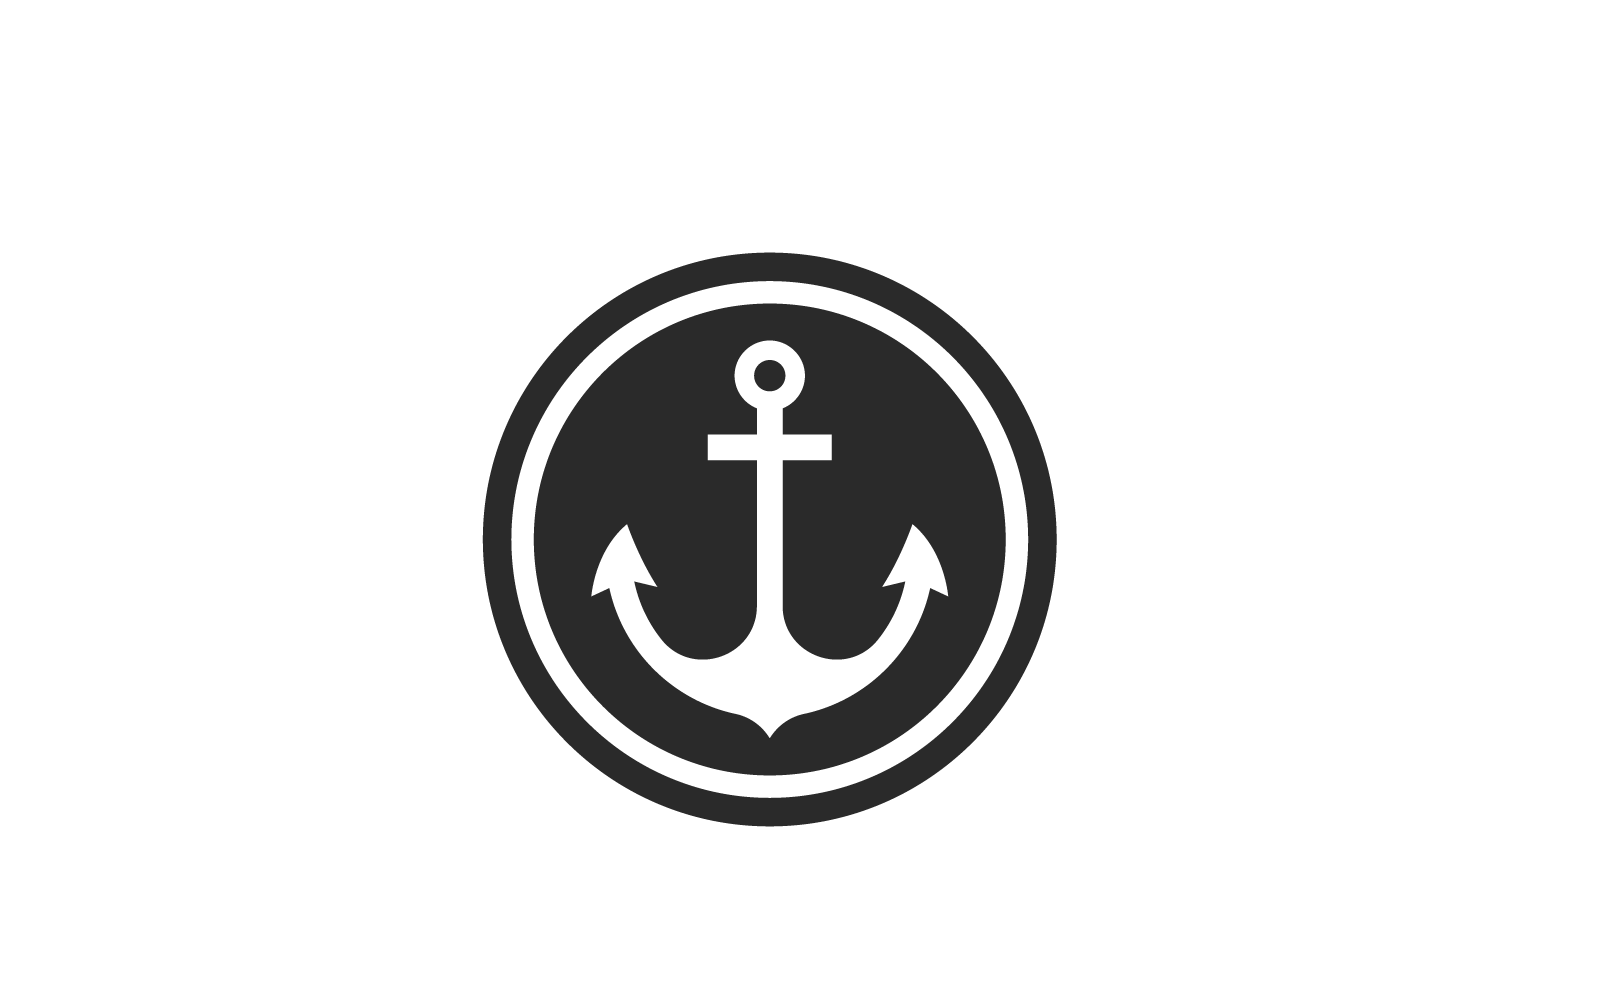 Anchor design vector logo illustration template